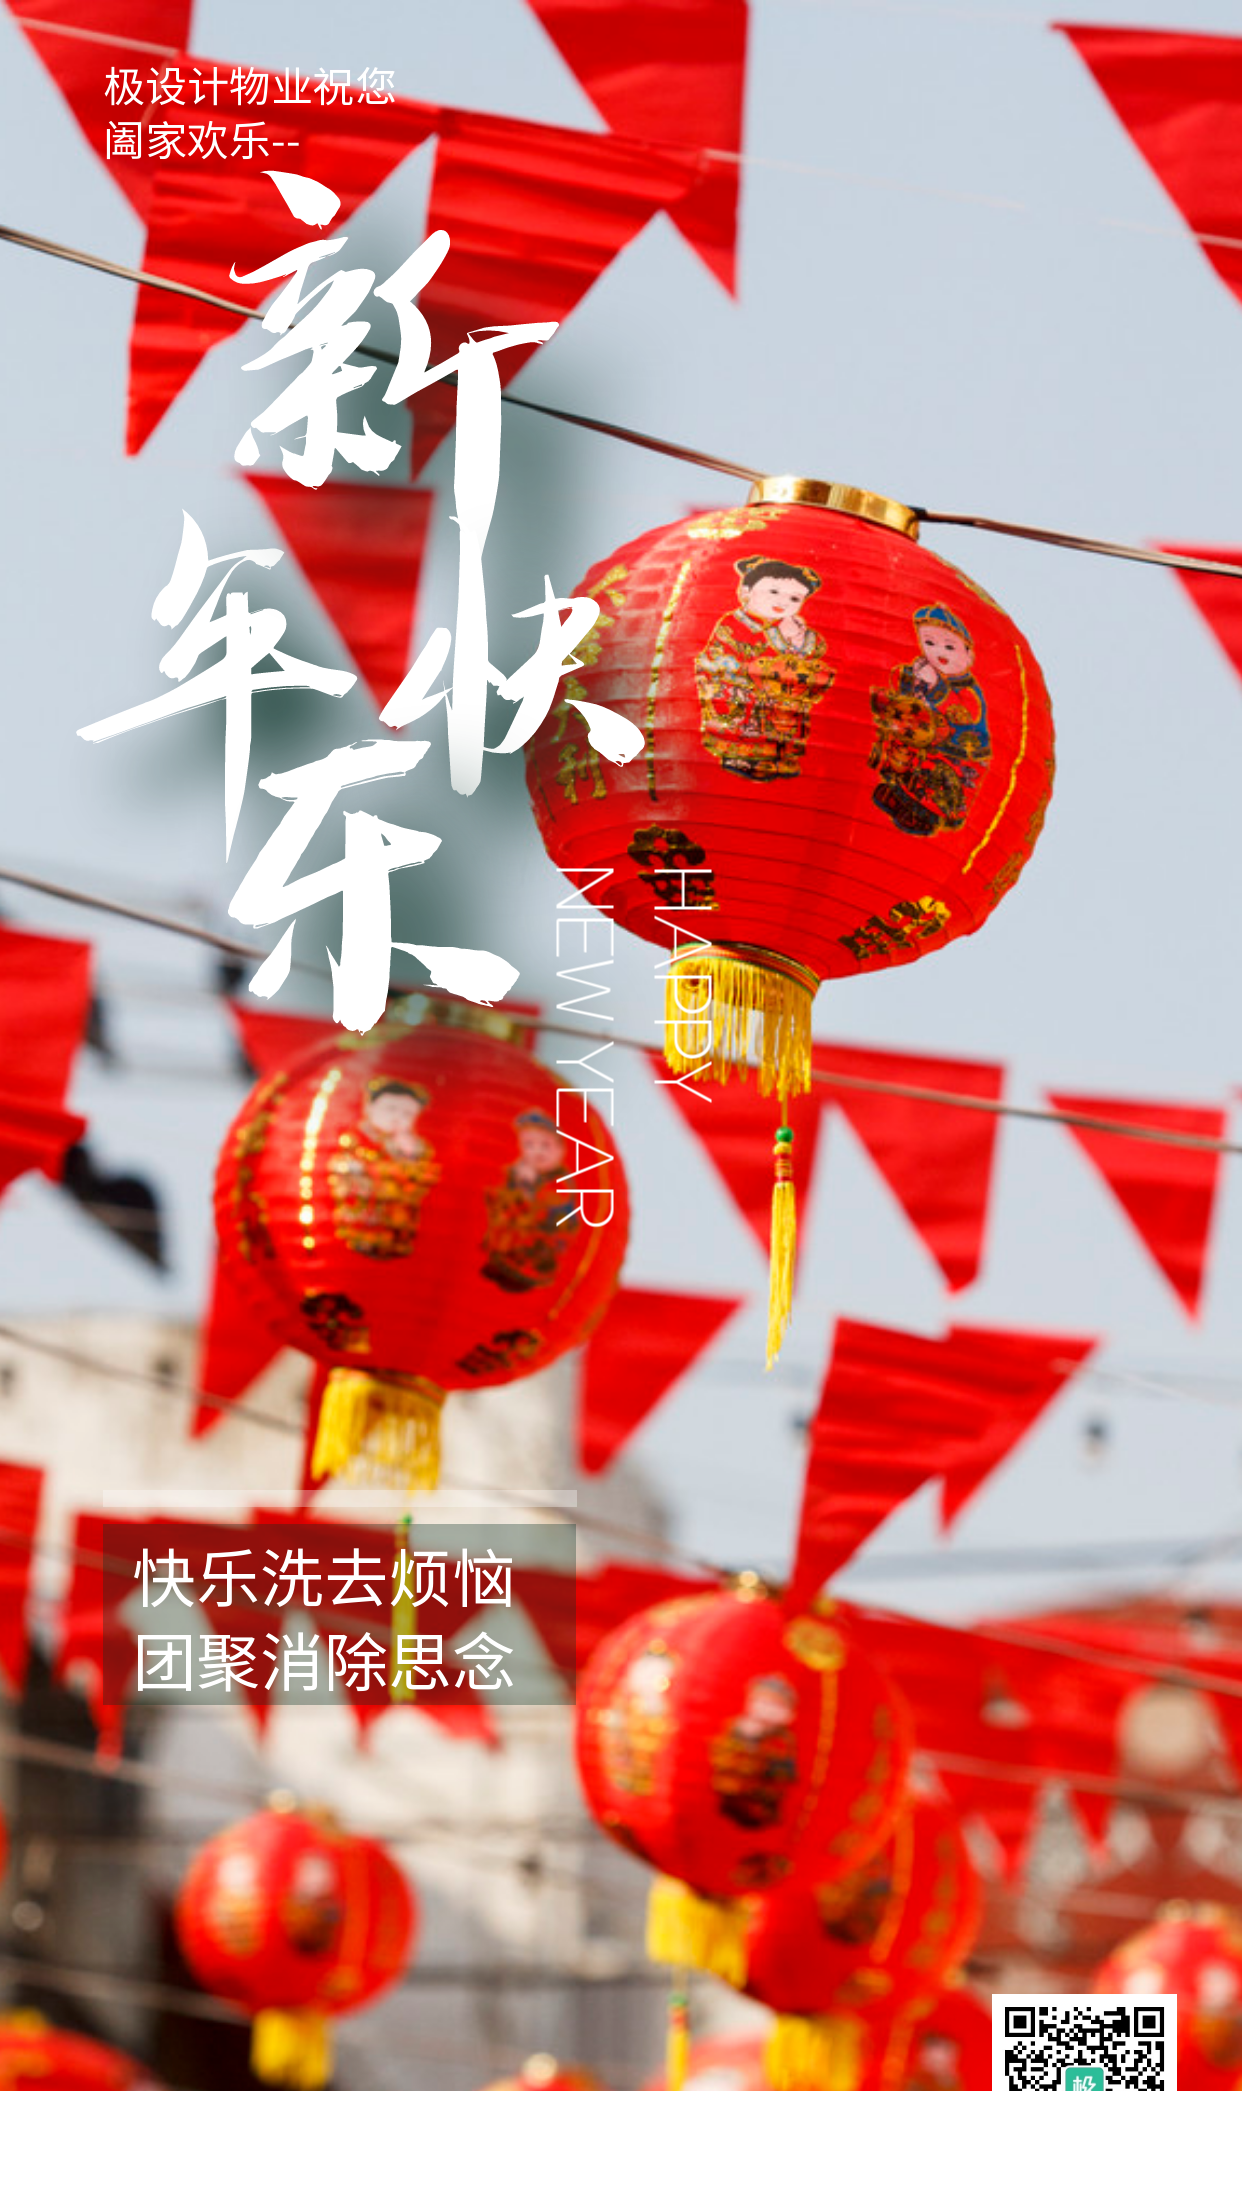 物业春节新年快乐祝福摄影手机营销海报